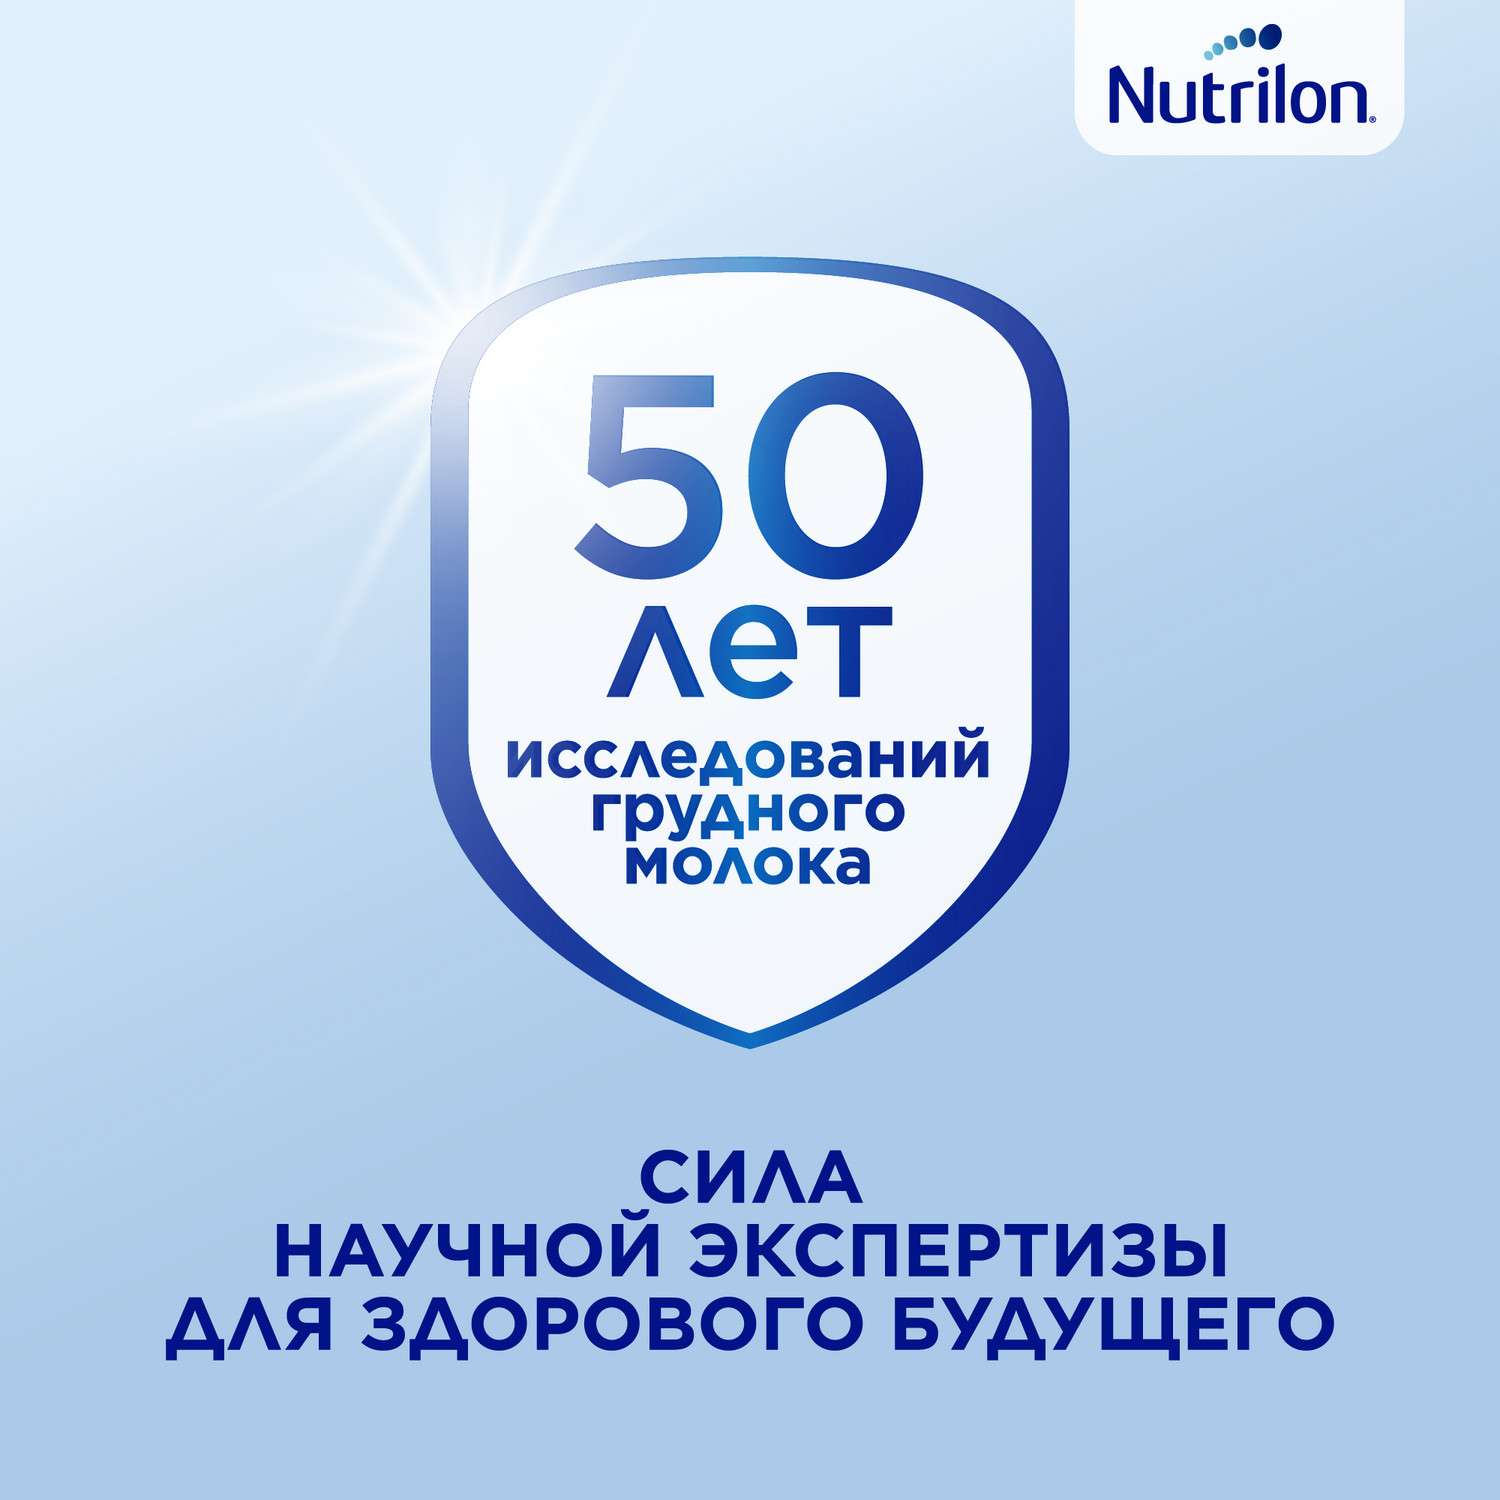 Молочко детское Nutrilon Premium 3 1200г с 12месяцев - фото 6